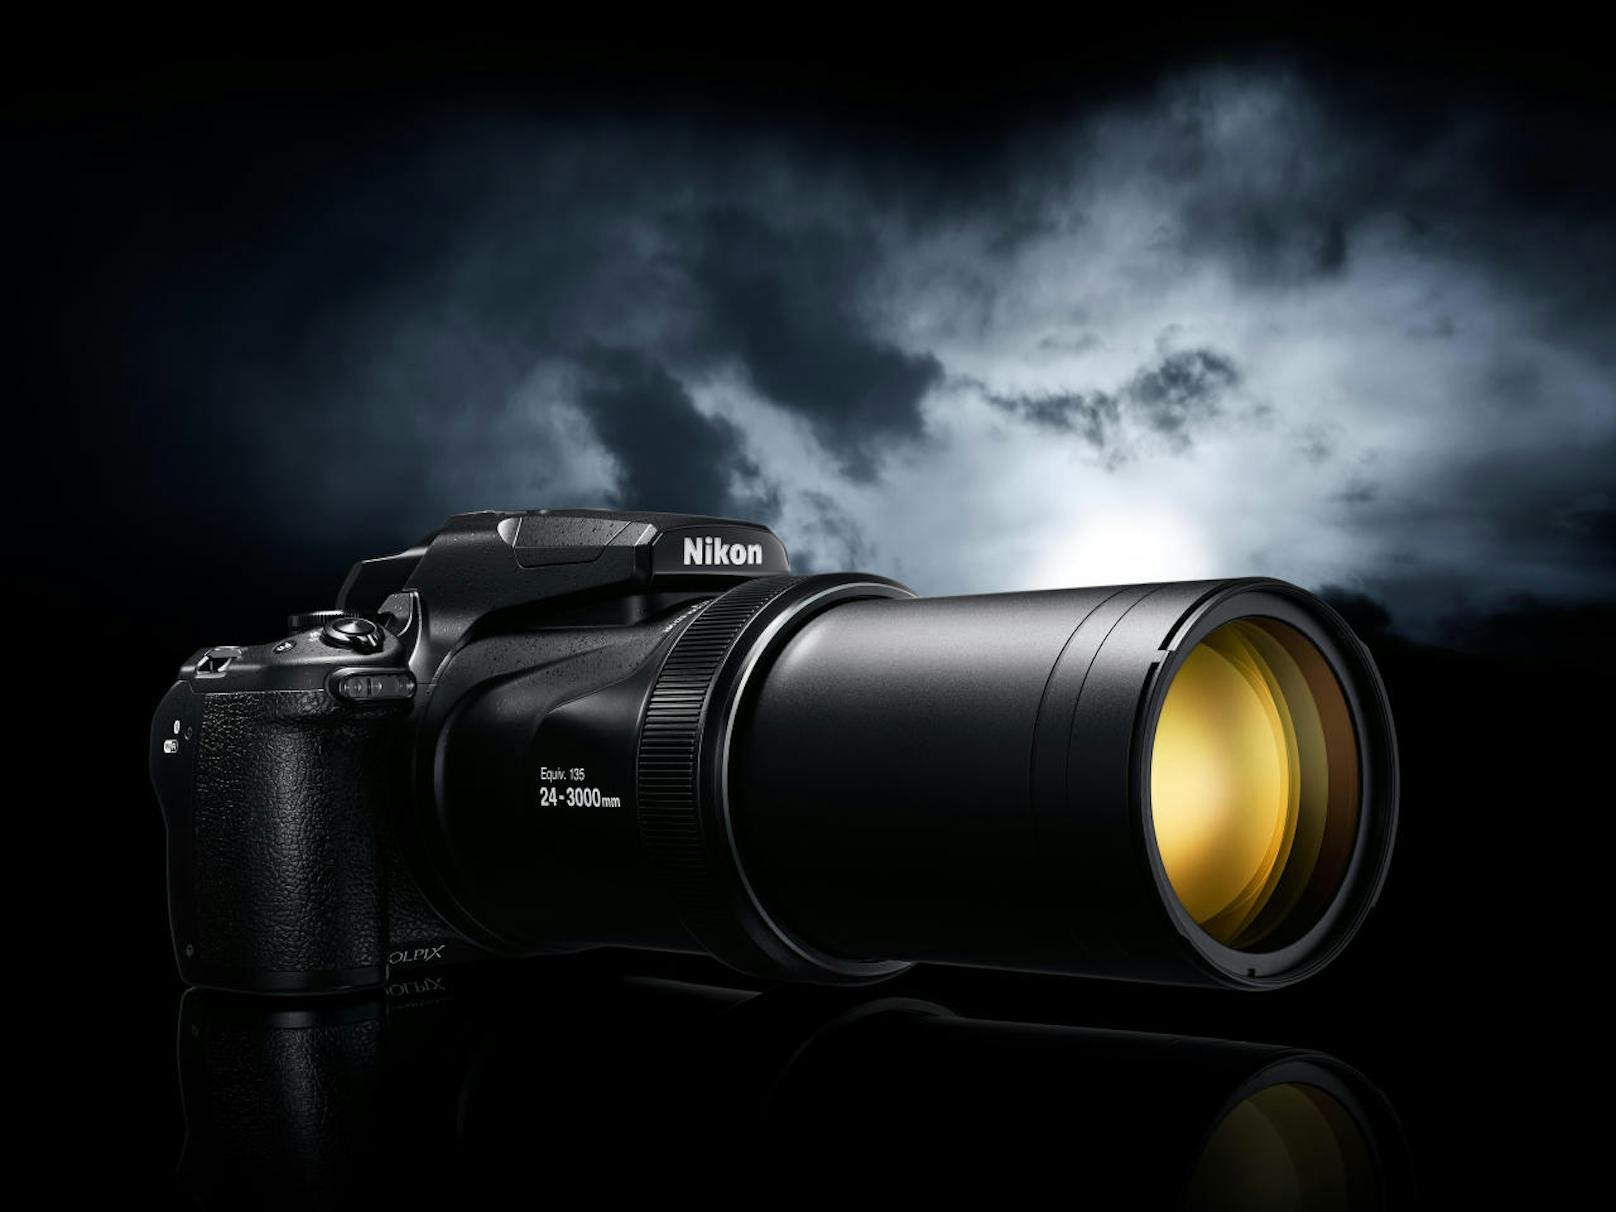 <b>10. Juli 2018:</b> Nikon stellt die neue COOLPIX P1000 vor. Sie verfügt als einzige Kompaktkamera über einen optischen 125-fach-Zoom. Damit können Nutzer Mondlandschaften, Wildtiere und Flugzeuge aus der Ferne fotografieren, die bisher außer Reichweite waren. Der Zoom bietet den größten Brennweitenbereich von 24-3.000 mm. Der 250-fache Dynamic Fine Zoom erweitert zusätzlich die Obergrenze digital auf 6.000 mm. Die COOLPIX P1000 ist voraussichtlich ab Mitte September 2018 um 1.099 Euro im Handel erhältlich.